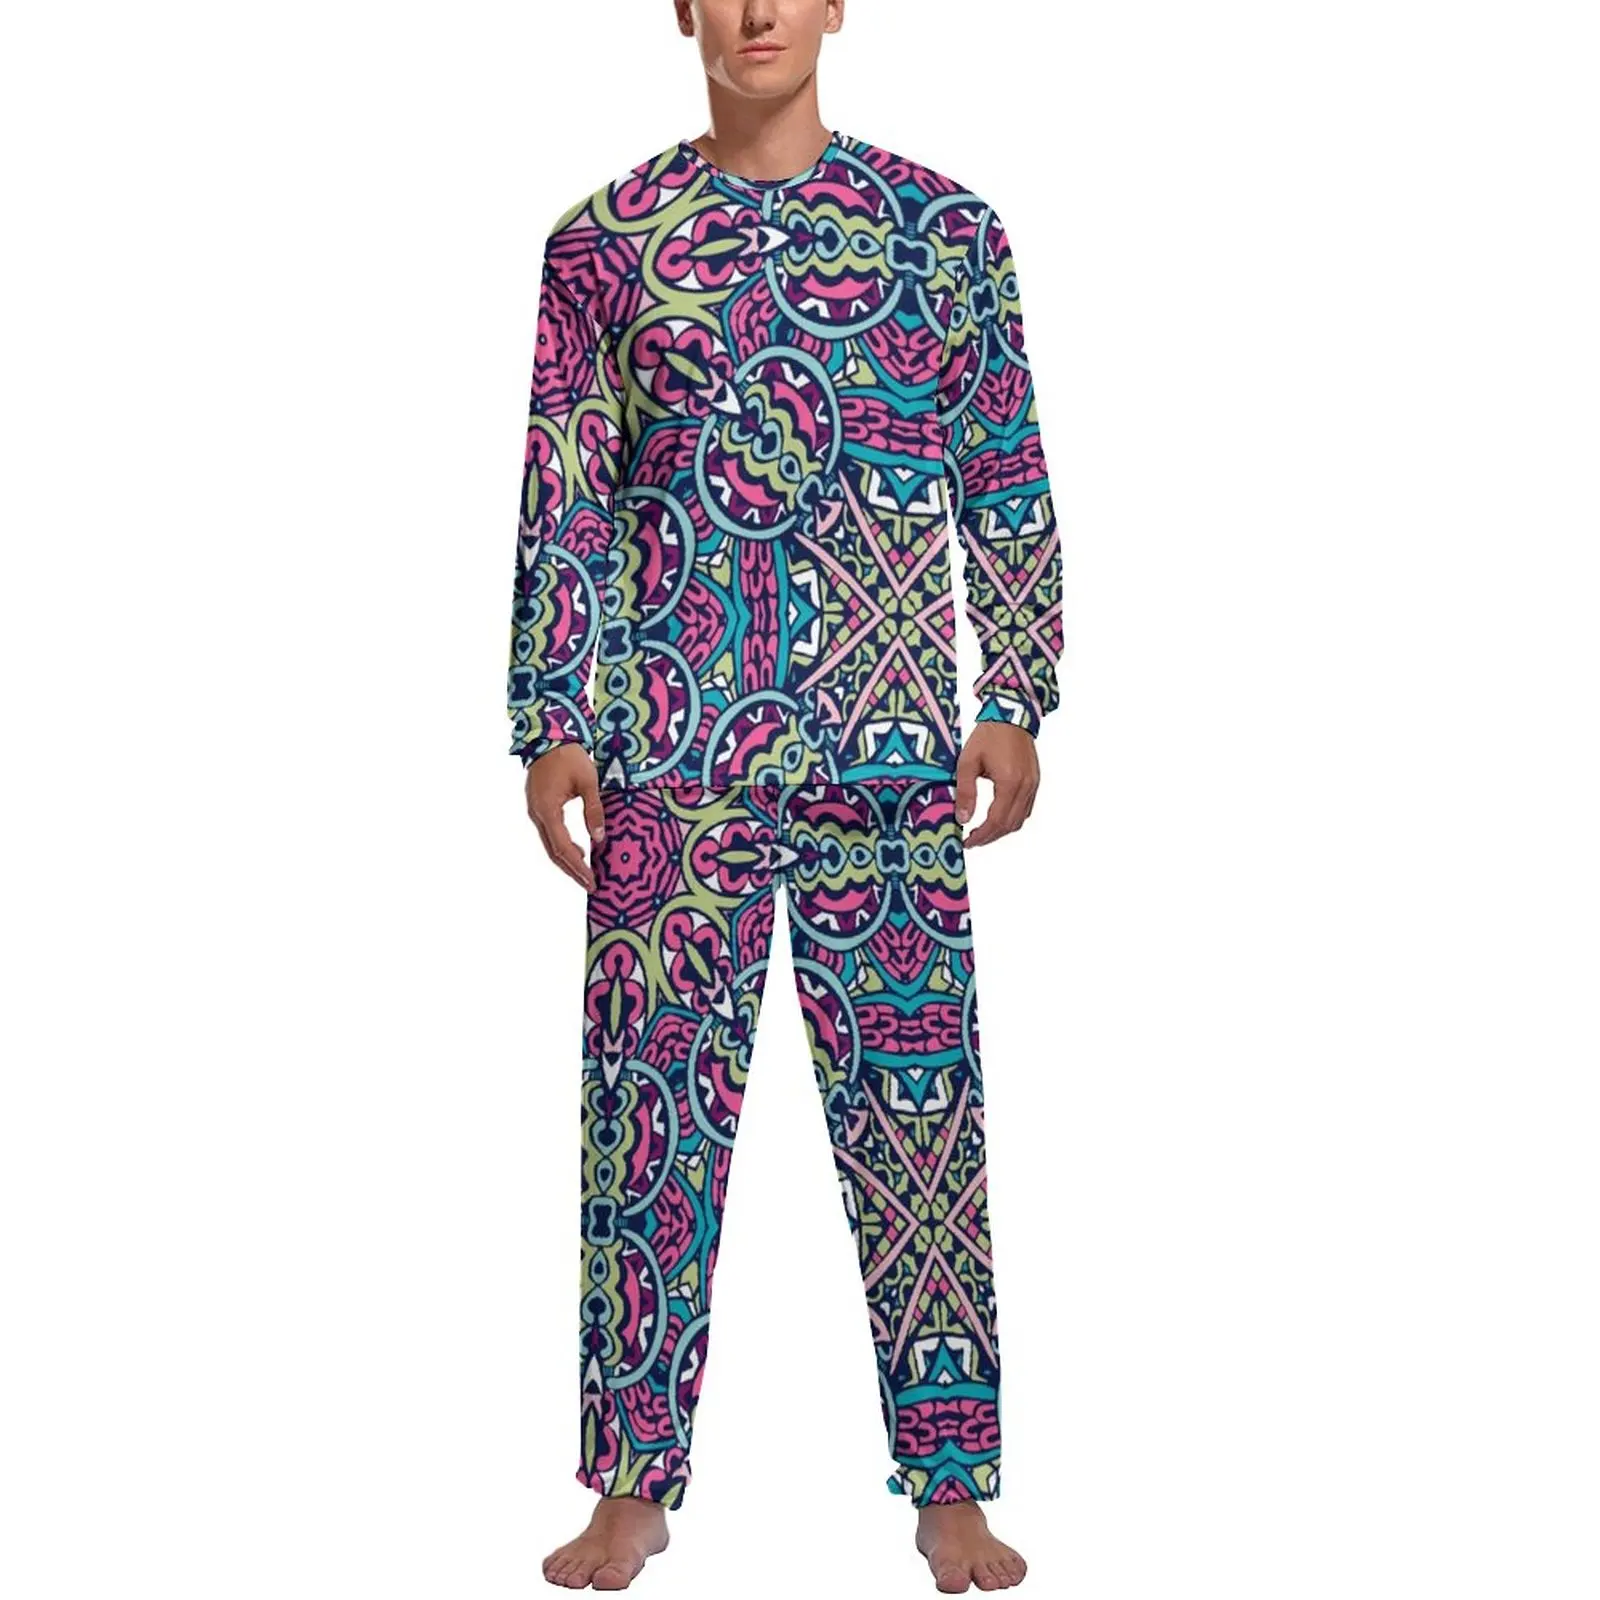 Bohemia Print Pajamas Autumn Pink Purple Mandala Casual Sleepwear Man 2 Pieces Design Long Sleeves Retro Pajama Sets